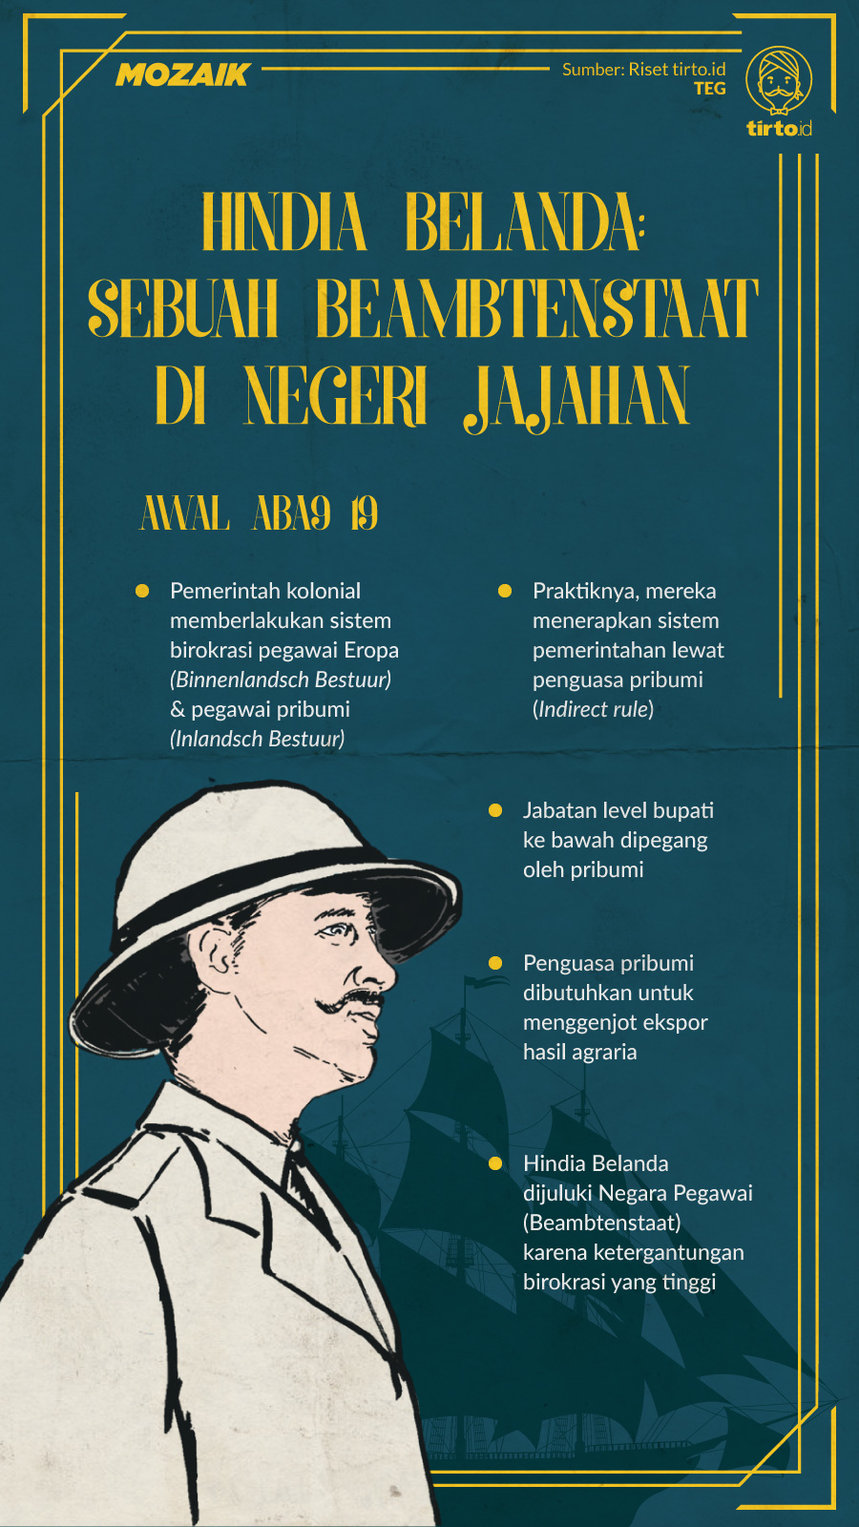 Infografik Mozaik Negara Hindia Belanda